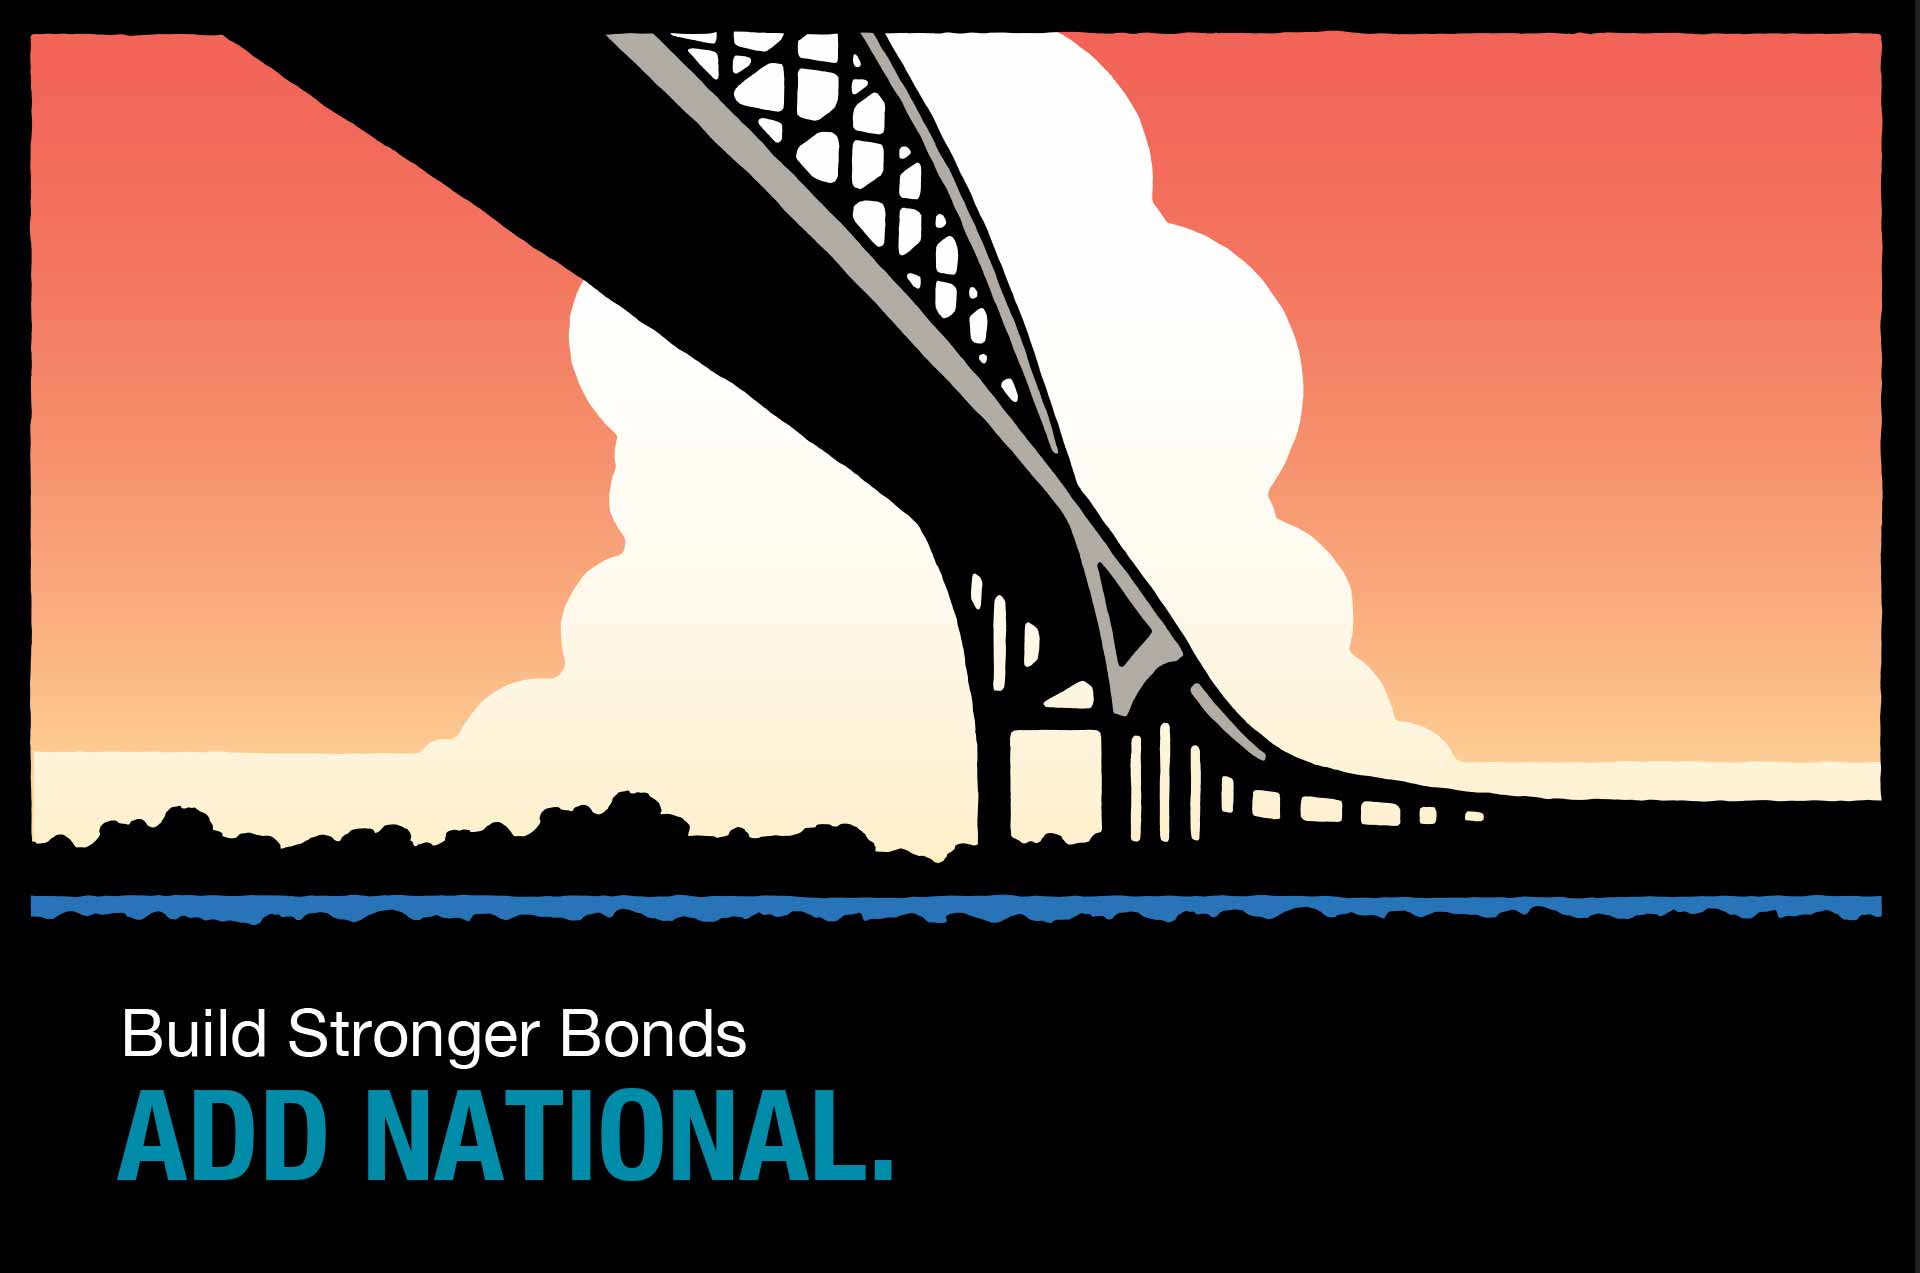 National logo with bridge image